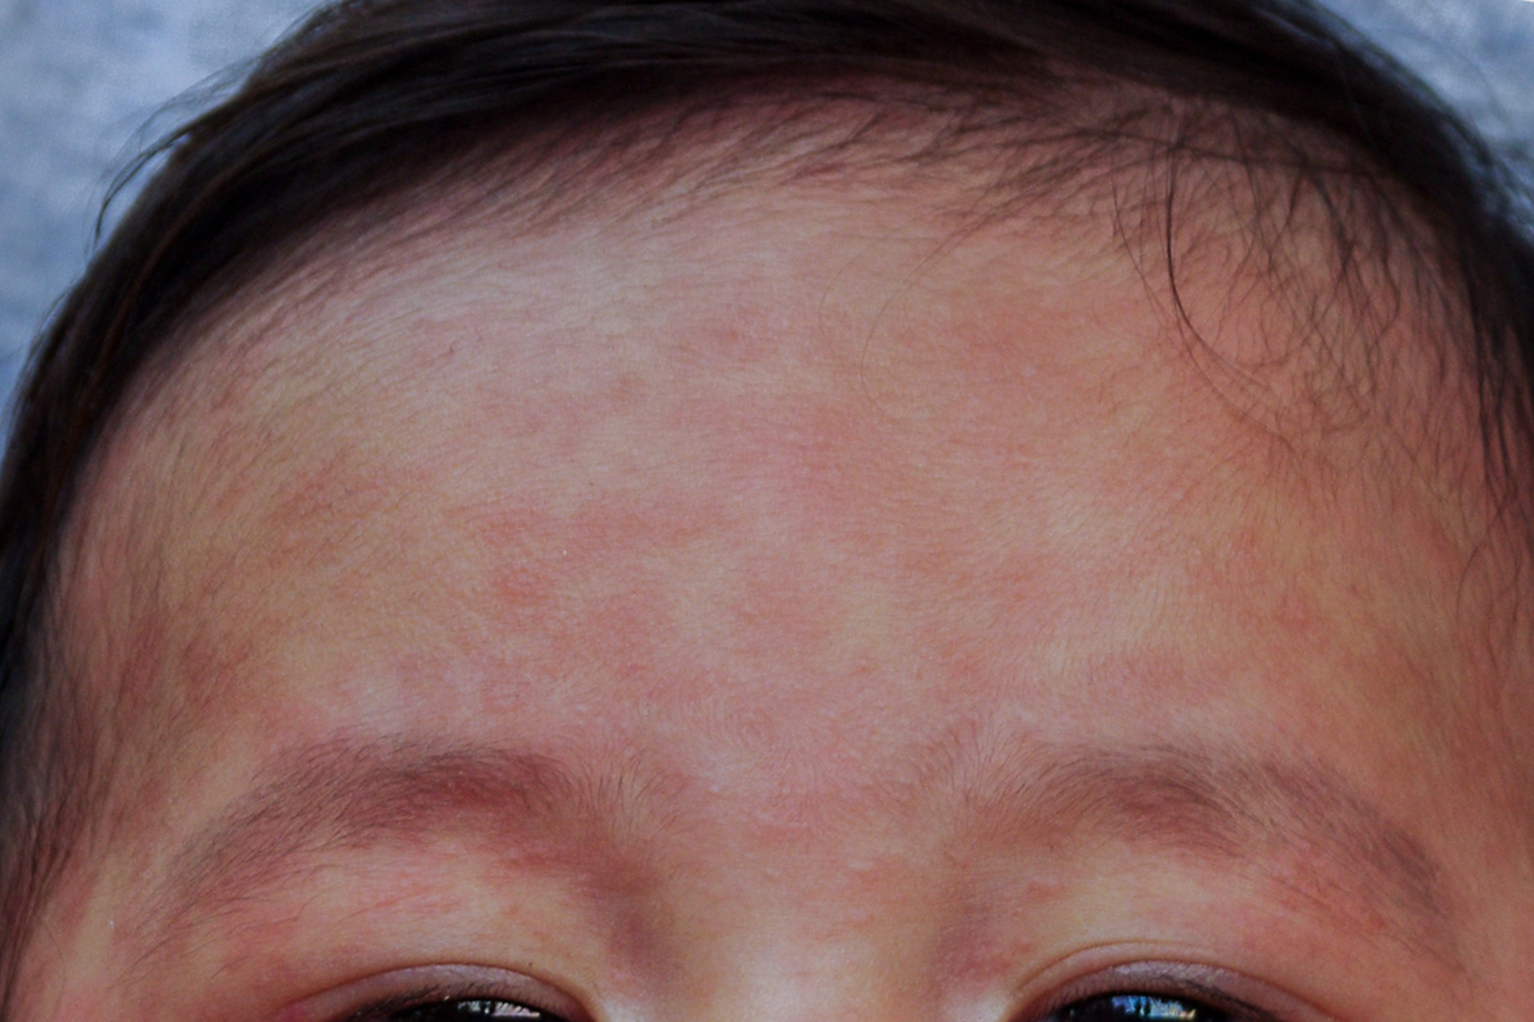 Measles rash on forehead of darker skin